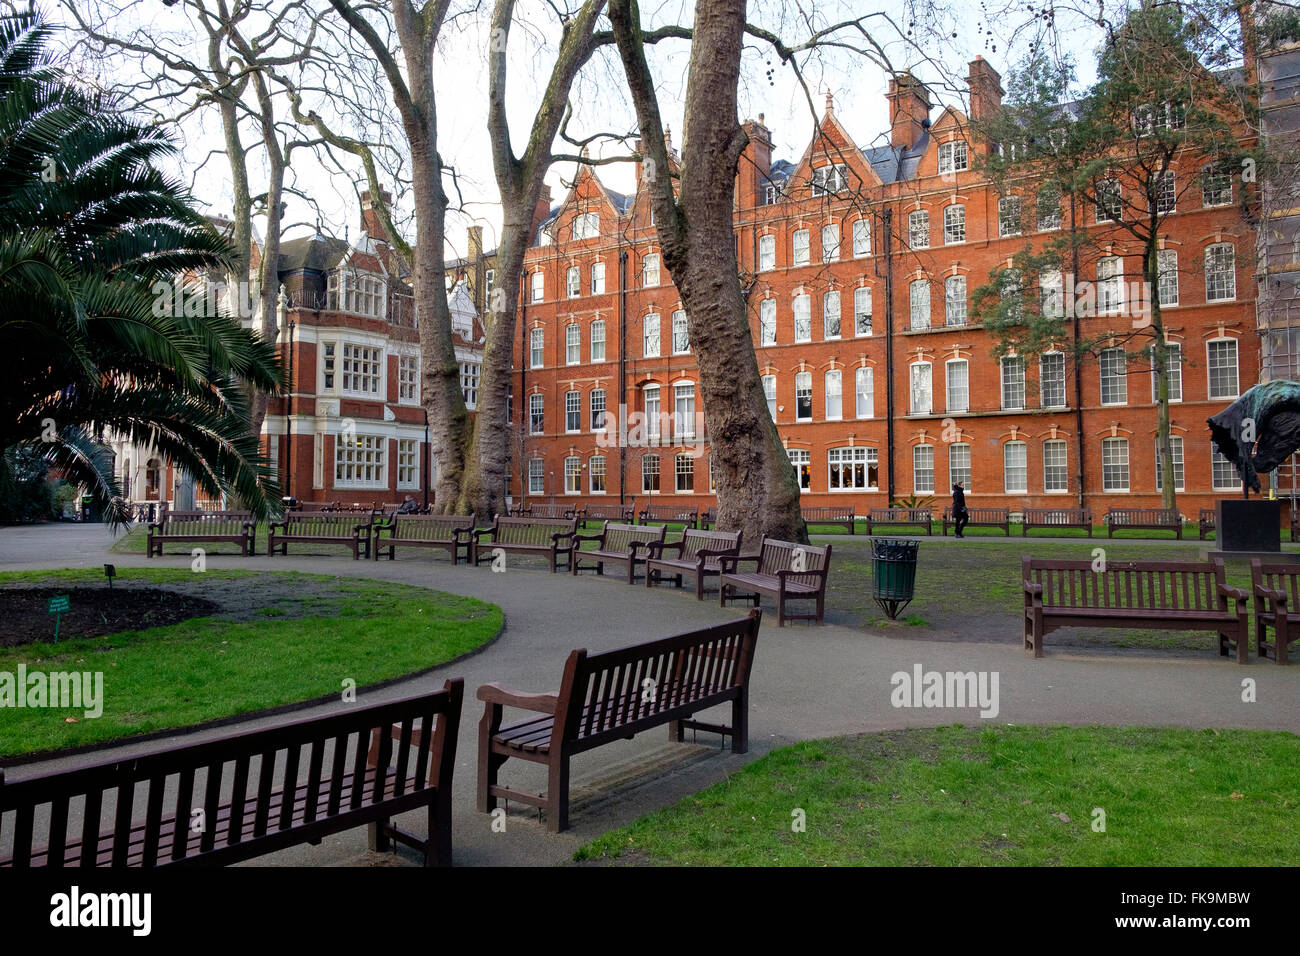 Londres, Royaume-Uni - 24 Février 2016 : Mount Street Gardens - un jardin public au coeur de Mayfair. Banque D'Images